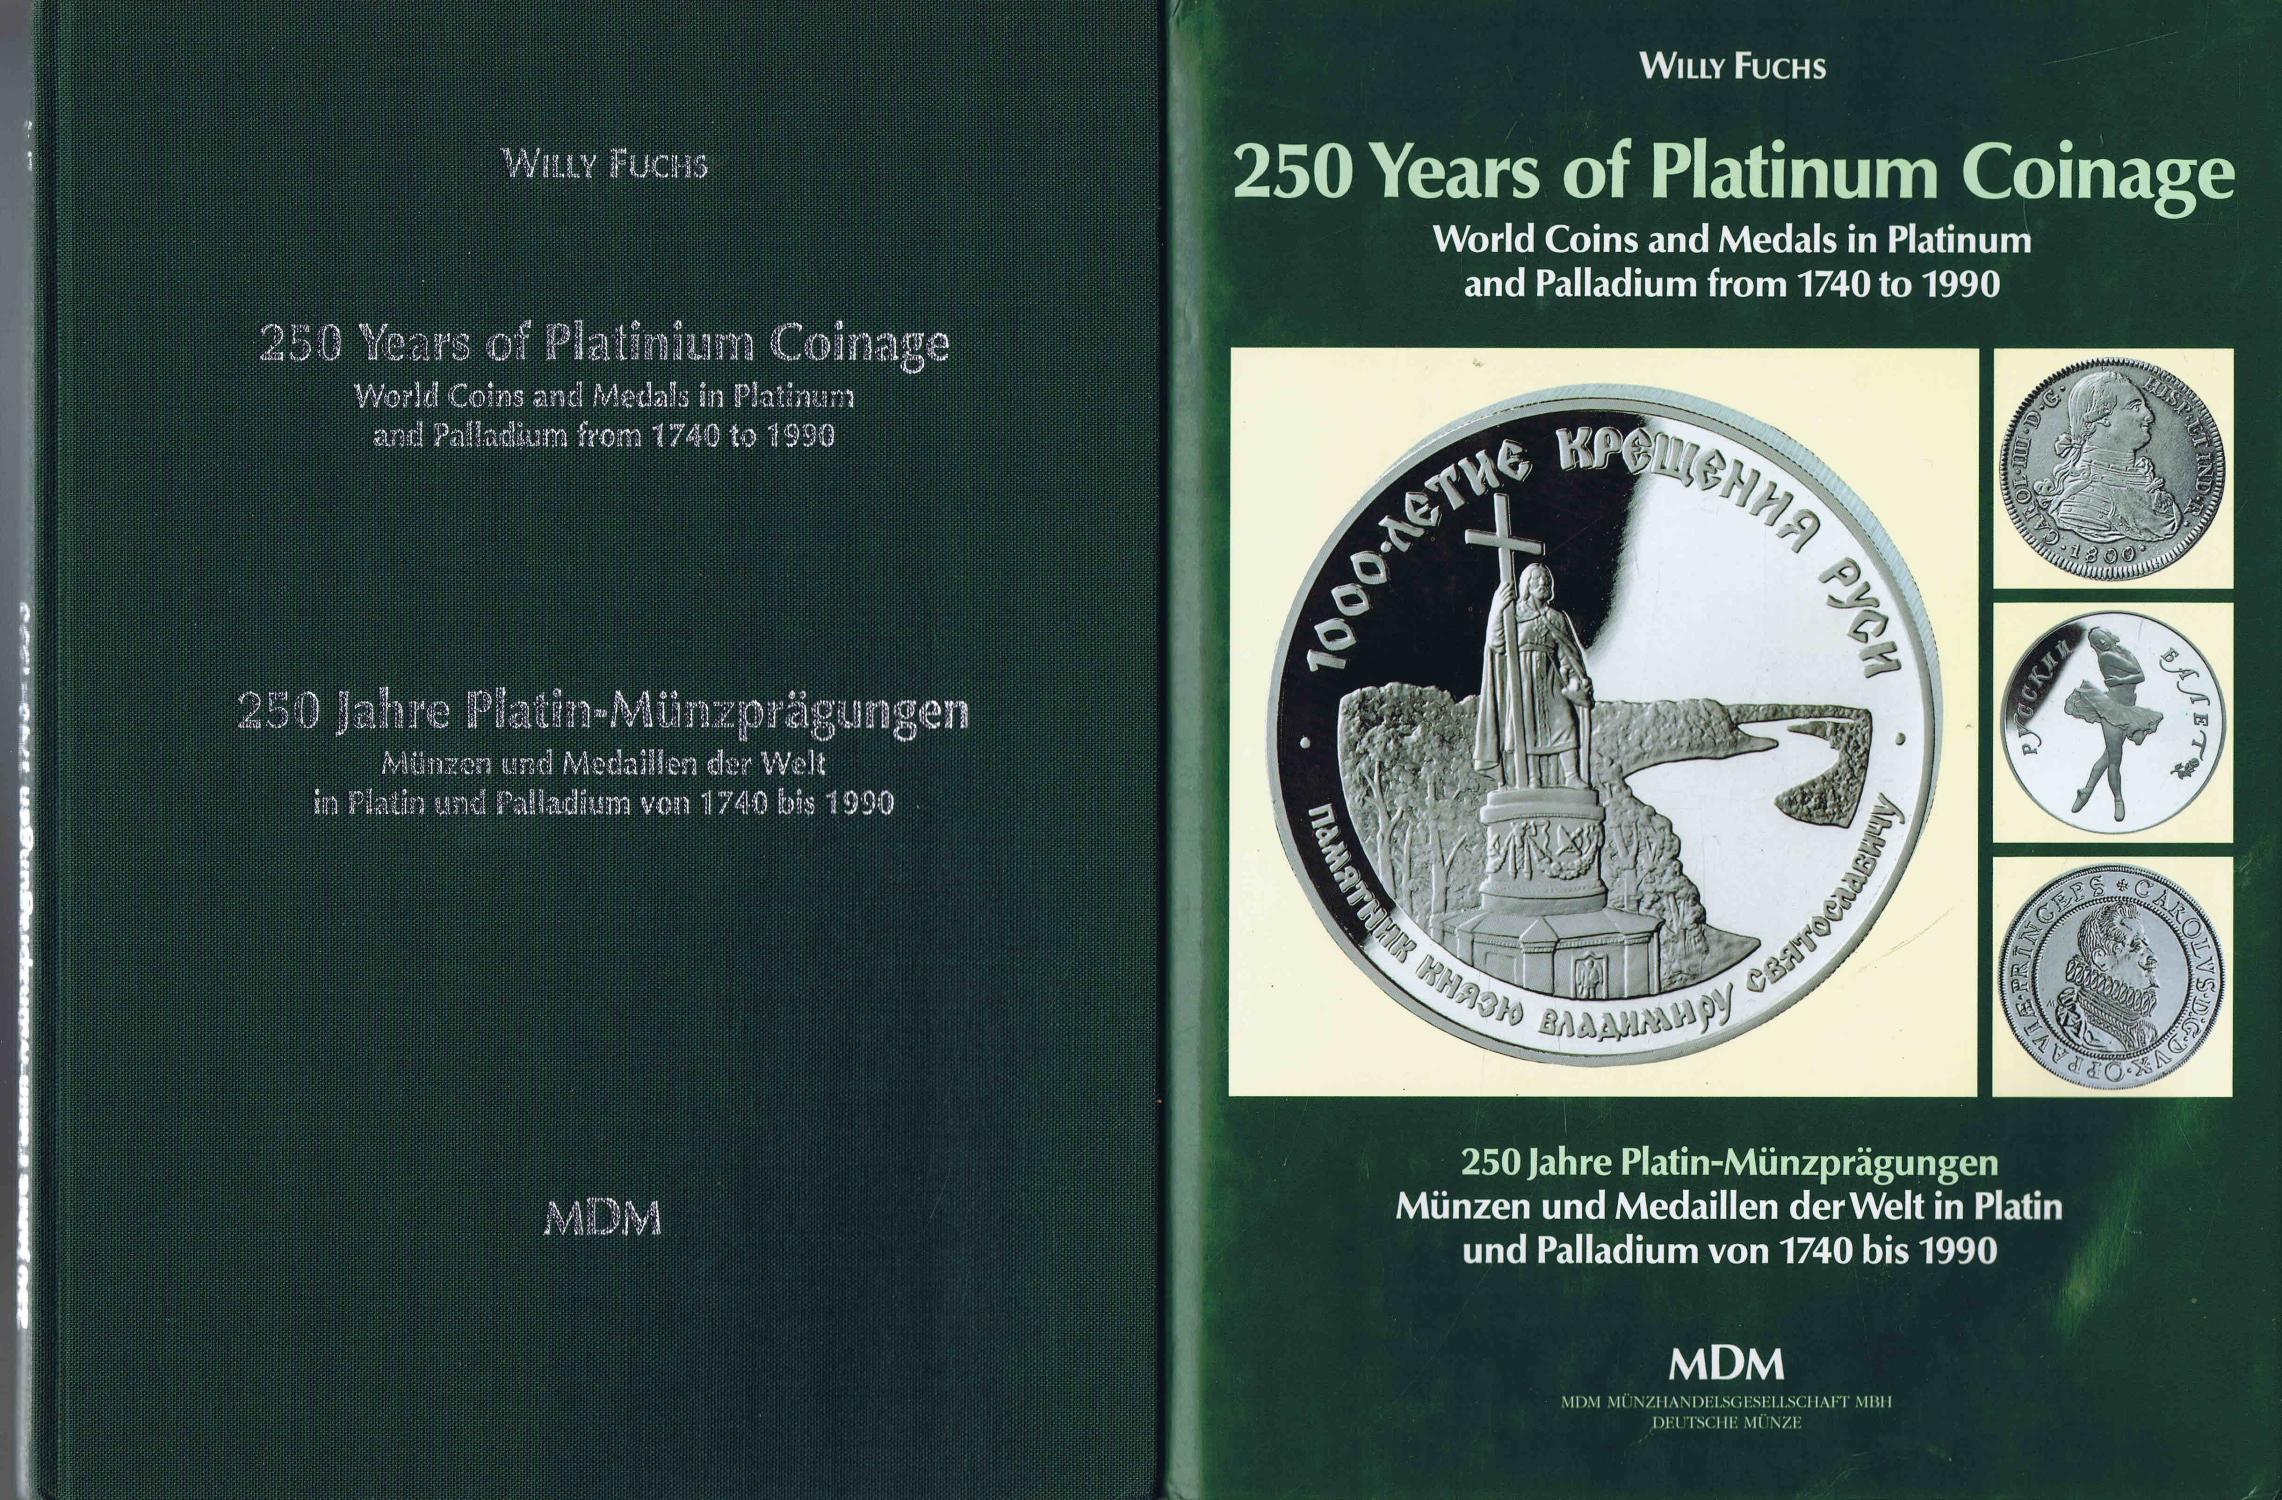 250 Jahre Platin-Münzprägungen. Münzen und Medaillen der Welt in Platin und Palladium von 1740 bis 1990./ 250 Years of Platinum Coinage. World Coins and Medals in Platinum and Palladium from 1740 to 1990. (ca. 1991) - Fuchs, Willy